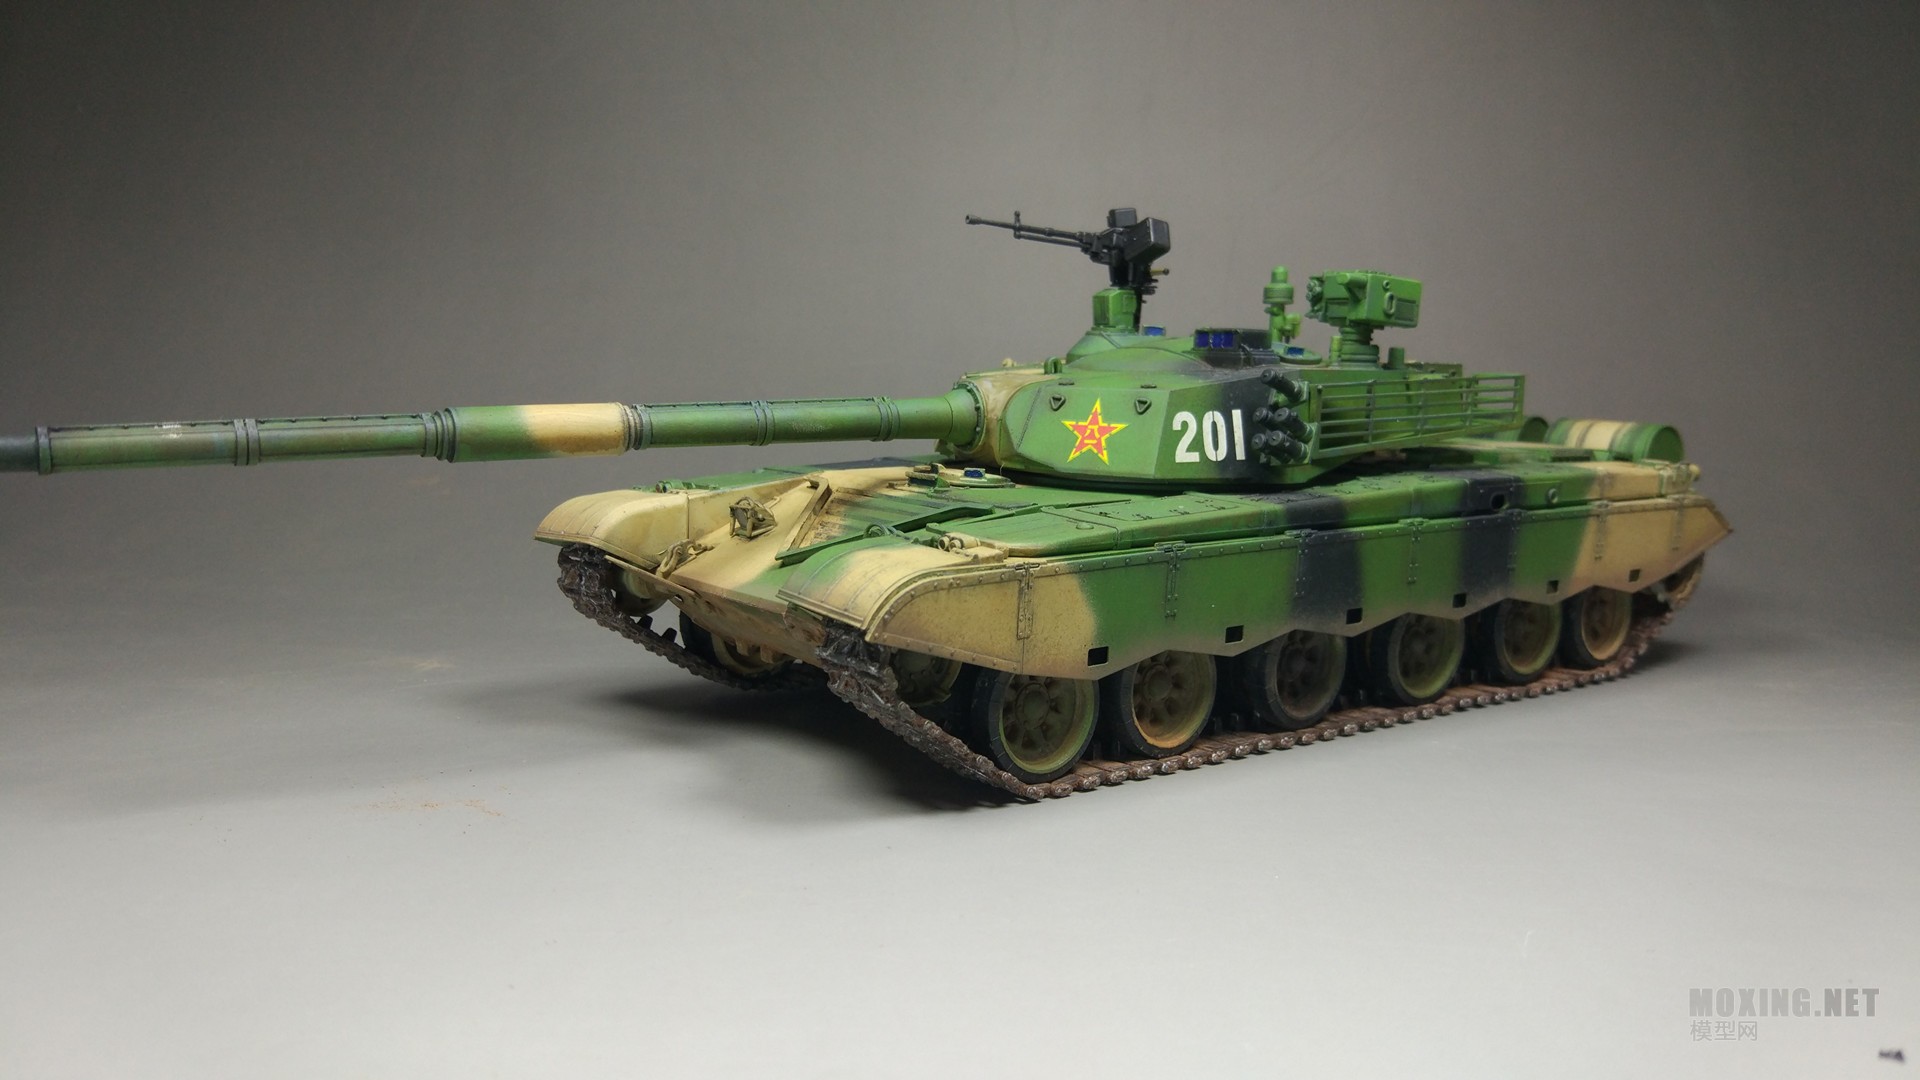 铁甲威龙 解放军99式主战坦克 - 坦克及装甲车辆展示区 - 模型网论坛